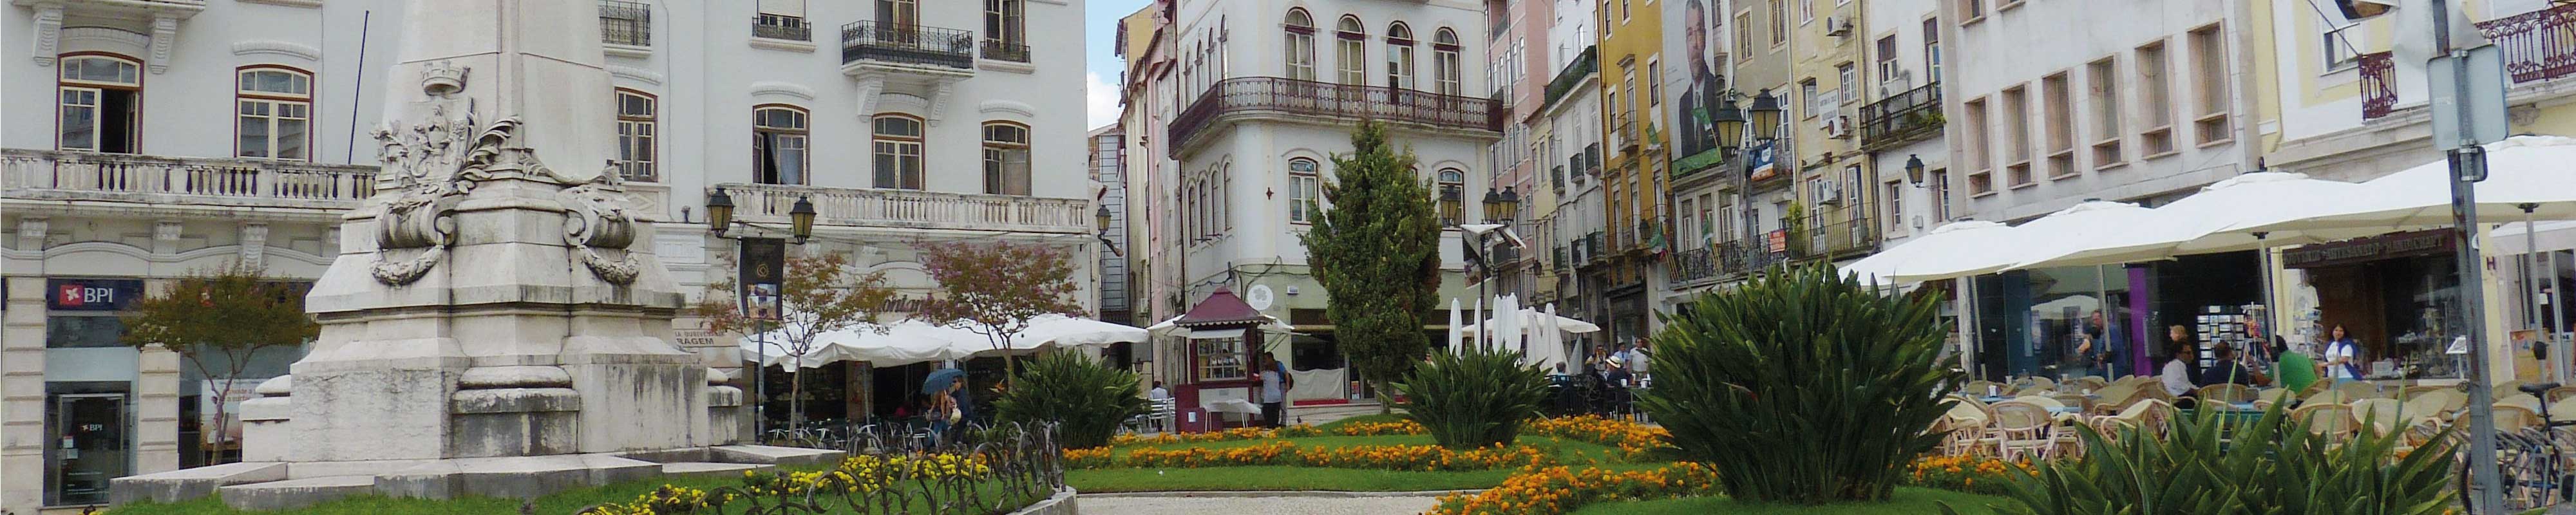 Deposito Bagagli | Coimbra - Nannybag